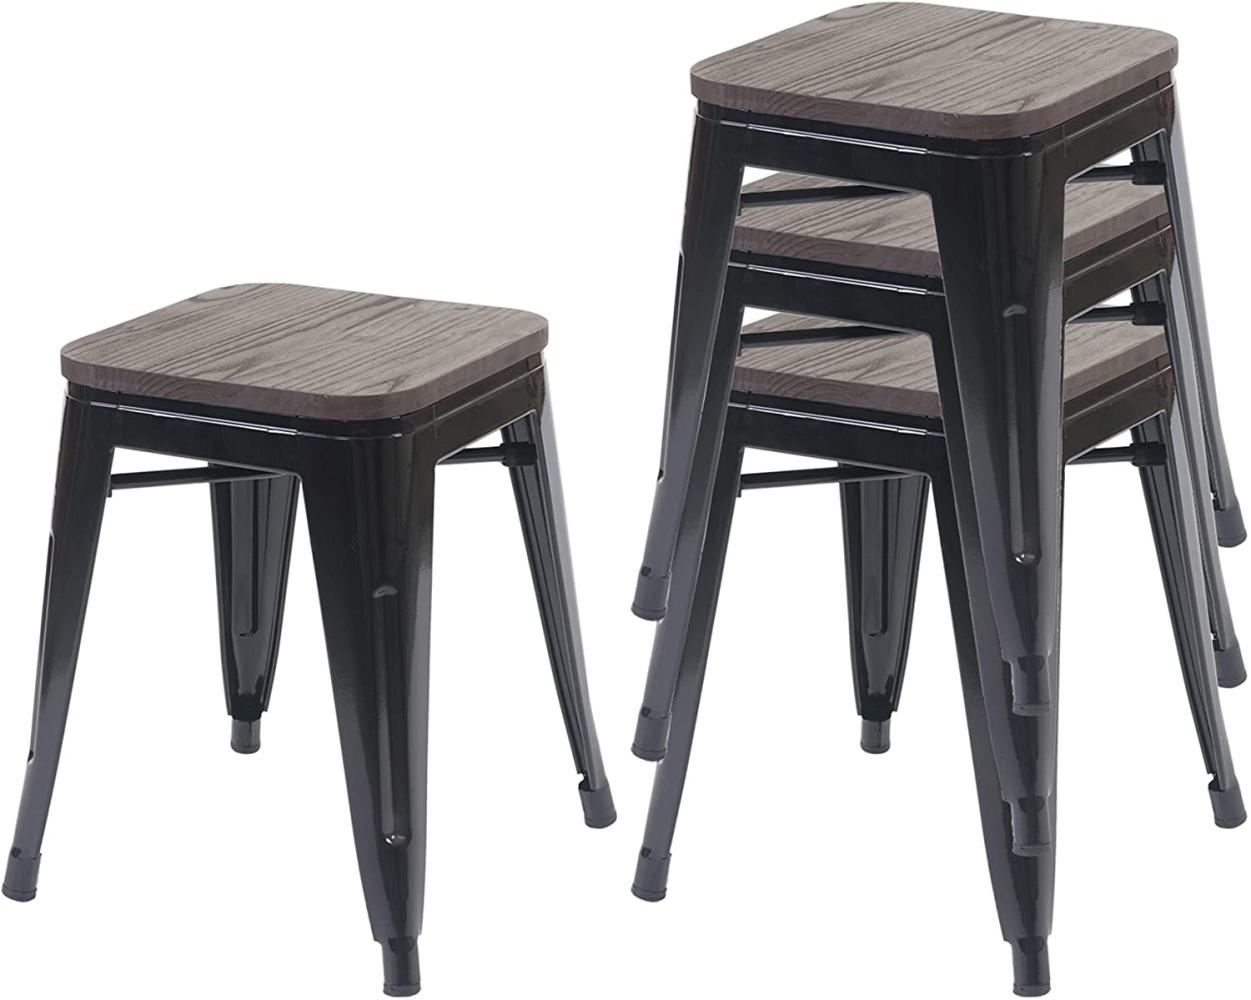 4er-Set Hocker HWC-A73 inkl. Holz-Sitzfläche, Metallhocker Sitzhocker, Metall Industriedesign stapelbar ~ schwarz Bild 1